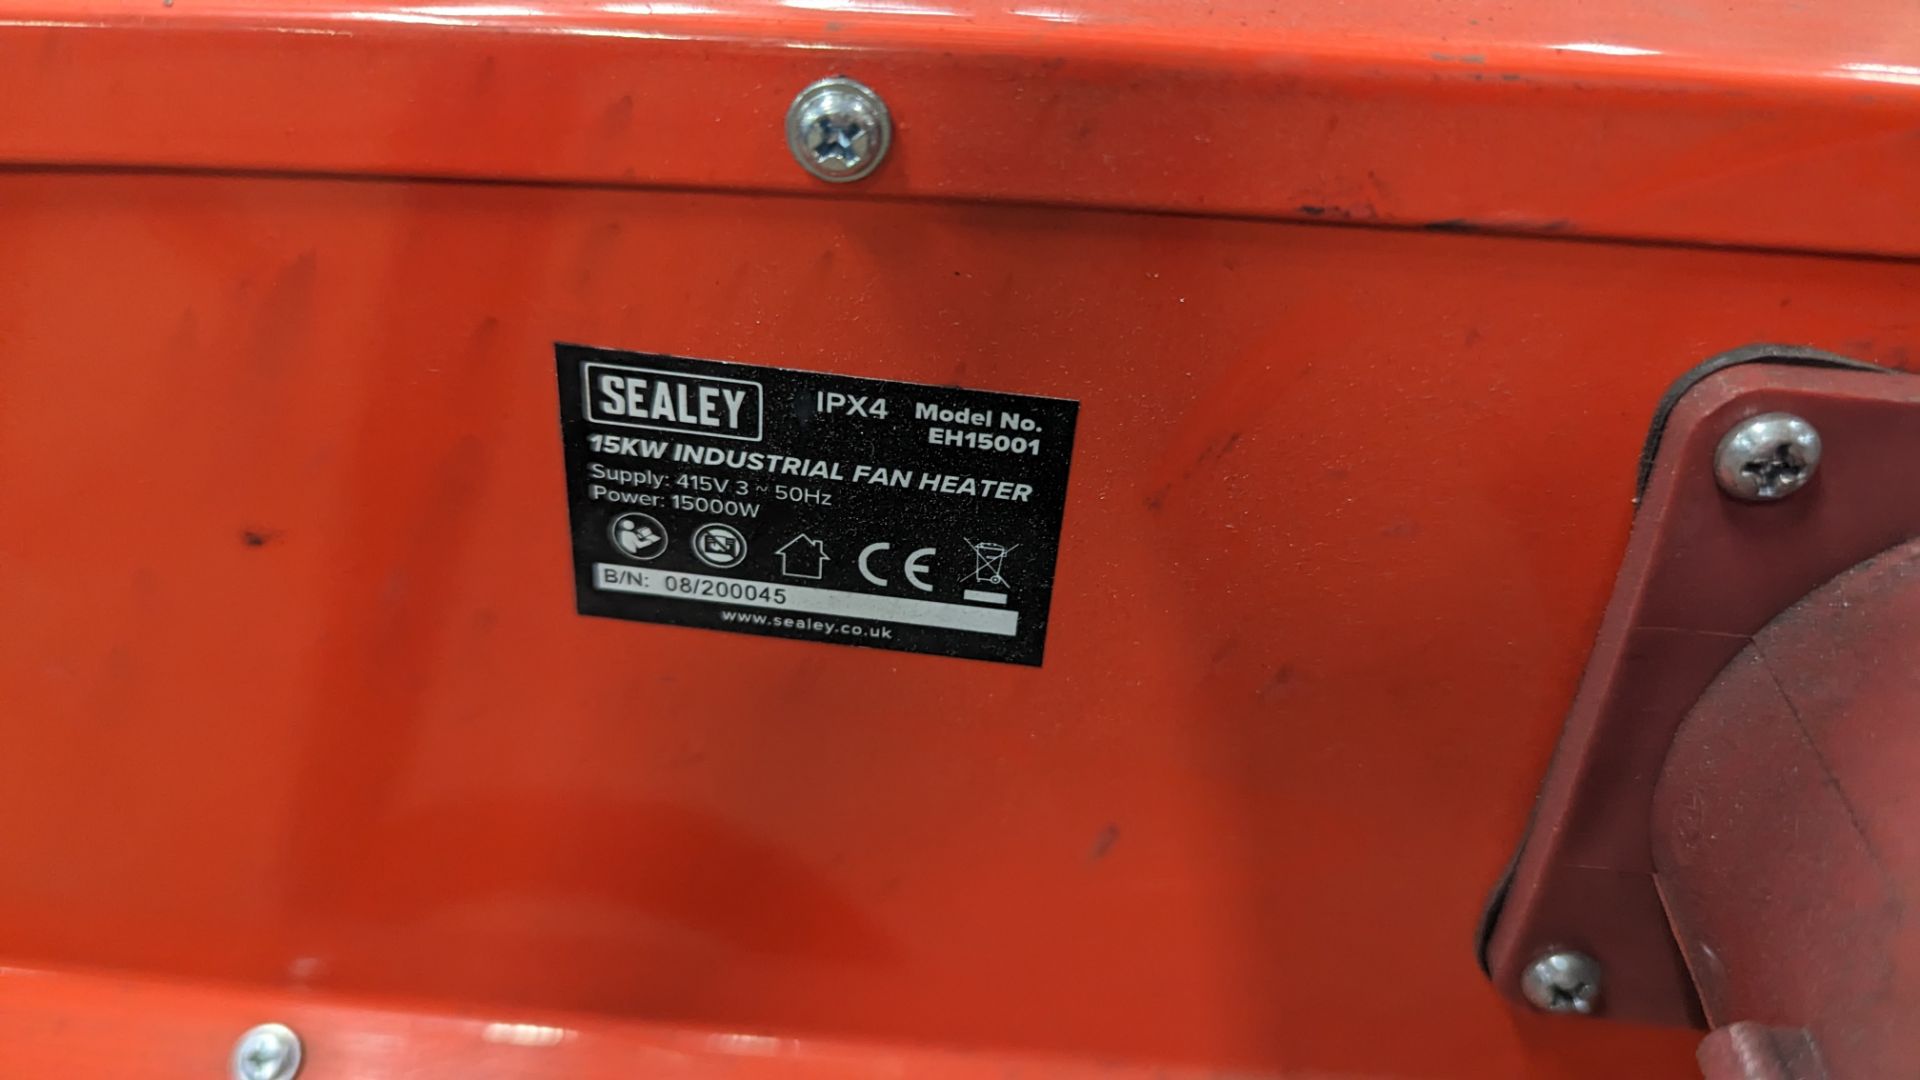 Sealey 15kw industrial fan heater - Image 6 of 7